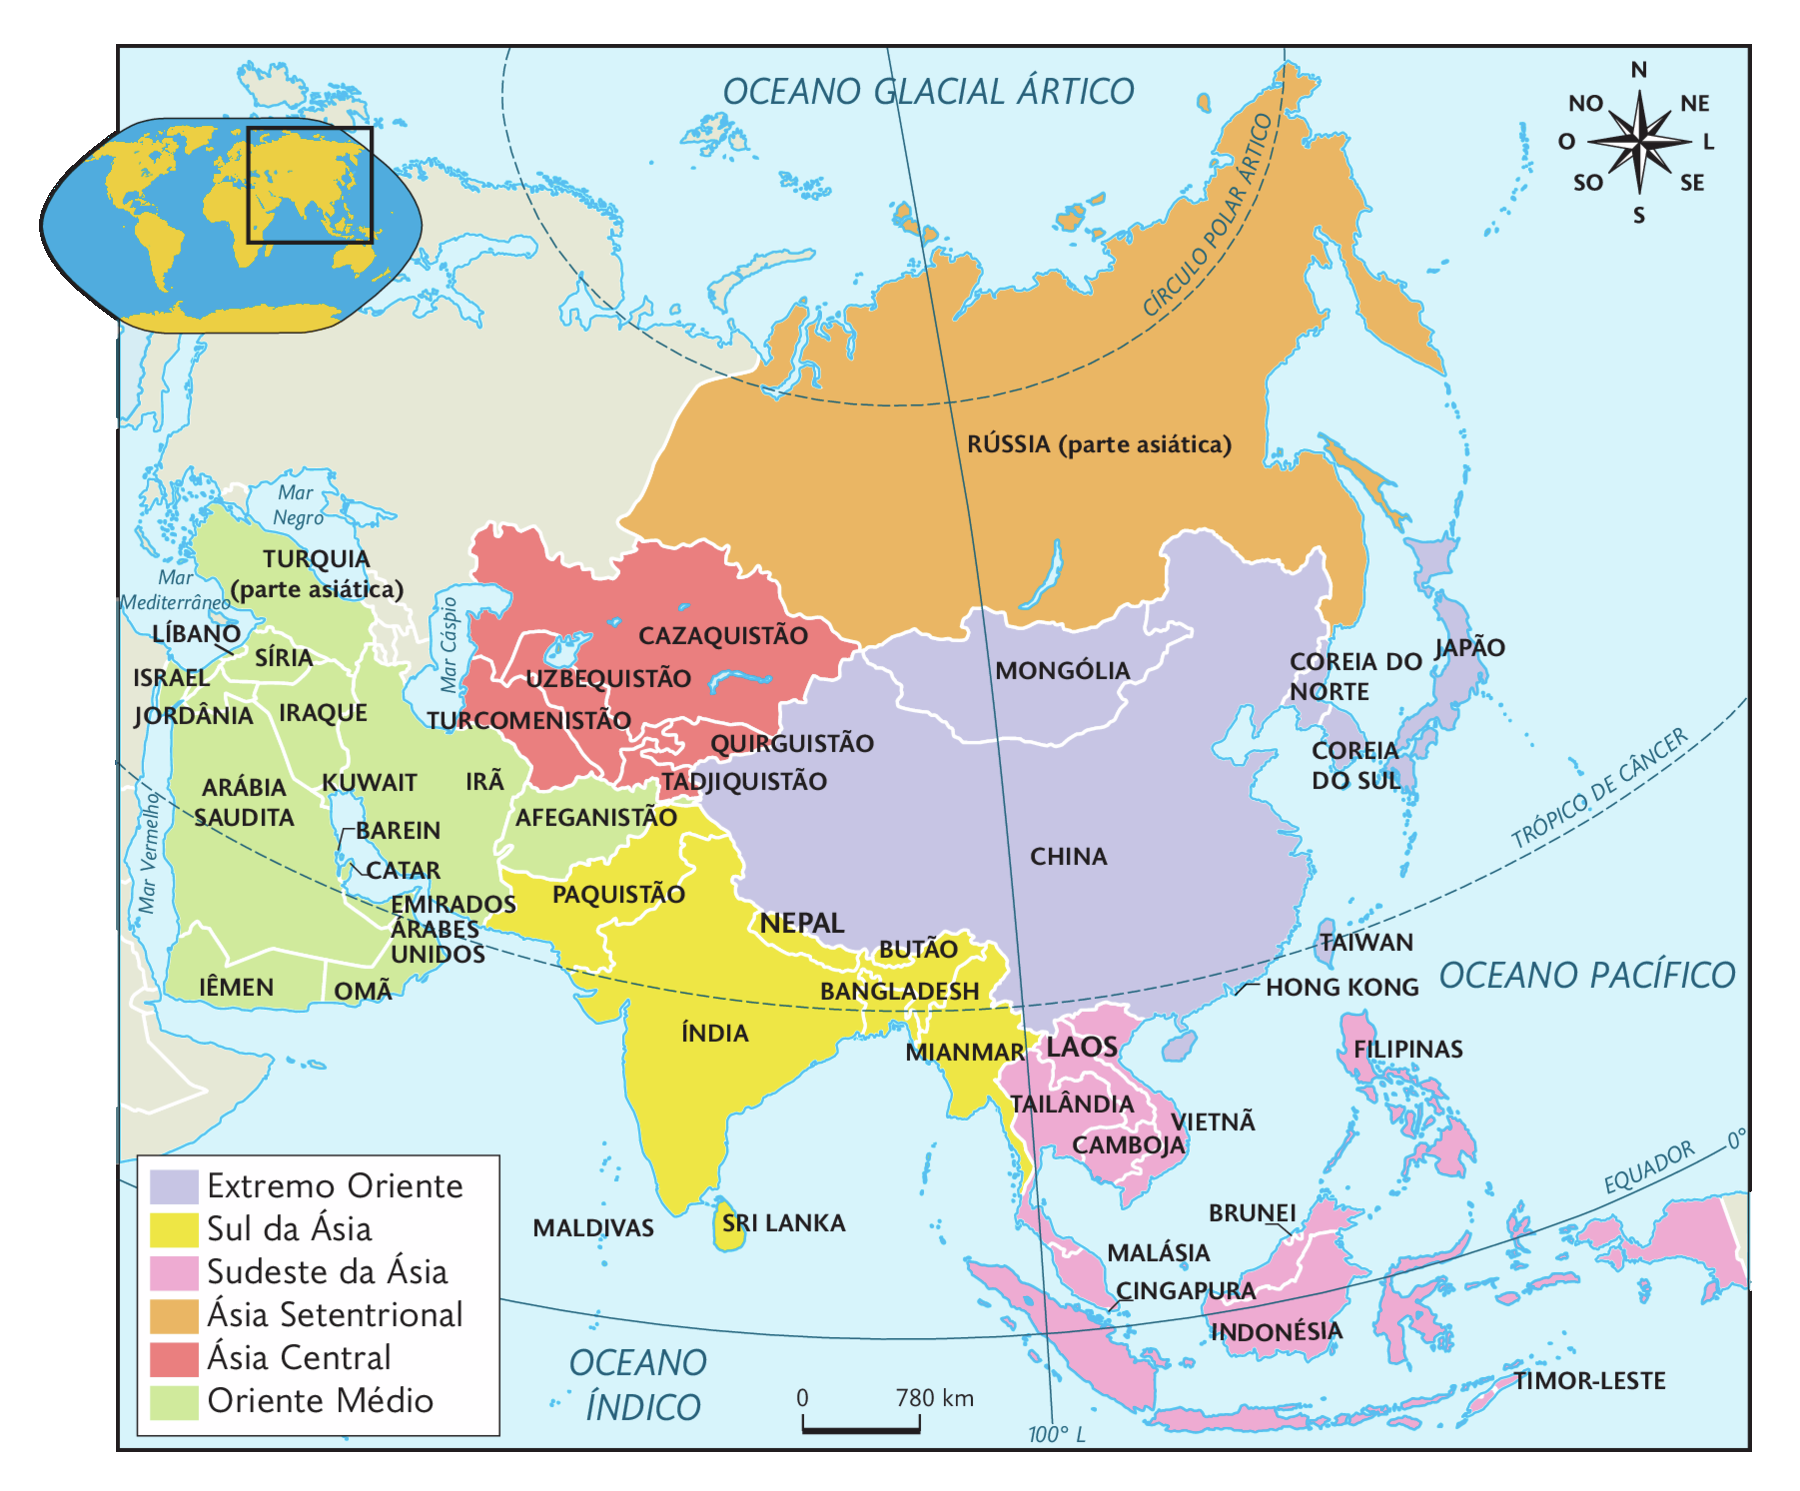 Mapa. Divisão regional da Ásia. Extremo Oriente: Mongólia, China, Hong Kong, território pertencente à China, Coreia do Norte, Coreia do Sul, Japão e Taiwan. Sul da Ásia: Paquistão, Índia, Nepal, Butão, Bangladesh, Mianmar e Sri Lanka. Sudeste da Ásia: Laos, Vietnã, Tailândia, Camboja, Malásia, Cingapura, Brunei, Indonésia, Filipinas e Timor-Leste. Ásia Setentrional: Rússia (parte asiática). Ásia Central: Cazaquistão, Uzbequistão, Turcomenistão, Quirguistão e Tadjiquistão. Oriente Médio: Turquia (parte asiática), Líbano, Síria, Israel, Jordânia, Síria, Iraque, Arábia Saudita, Iêmen, Kuwait, Barein, Catar, Emirados Árabes Unidos, Omã, Irã e Afeganistão. No canto superior esquerdo, mapa de localização, planisfério destacando a região descrita. No canto superior direito, a rosa dos ventos e na parte inferior, a escala: 780 quilômetros por centímetro.